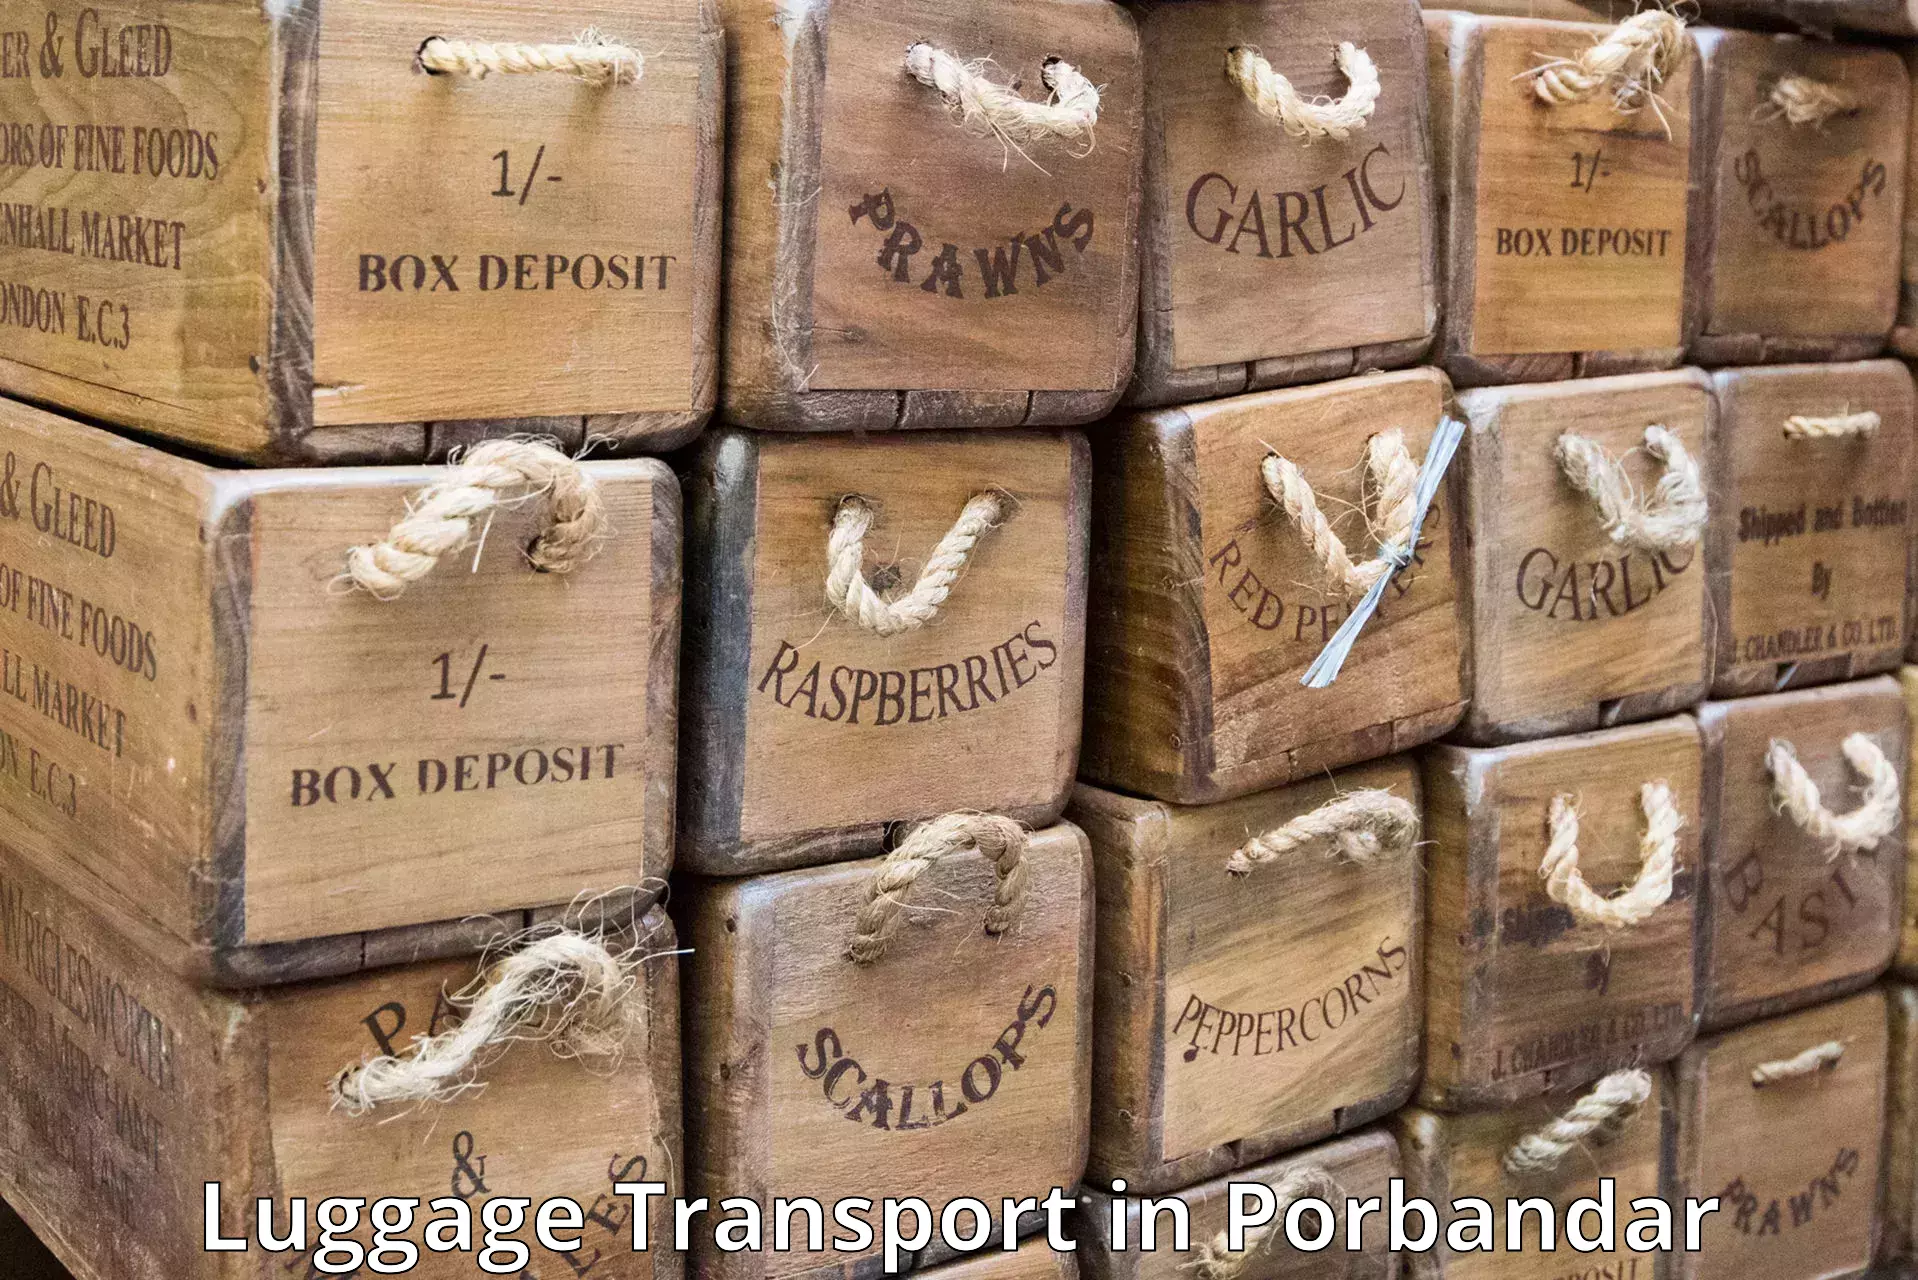 Baggage transport estimate in Porbandar